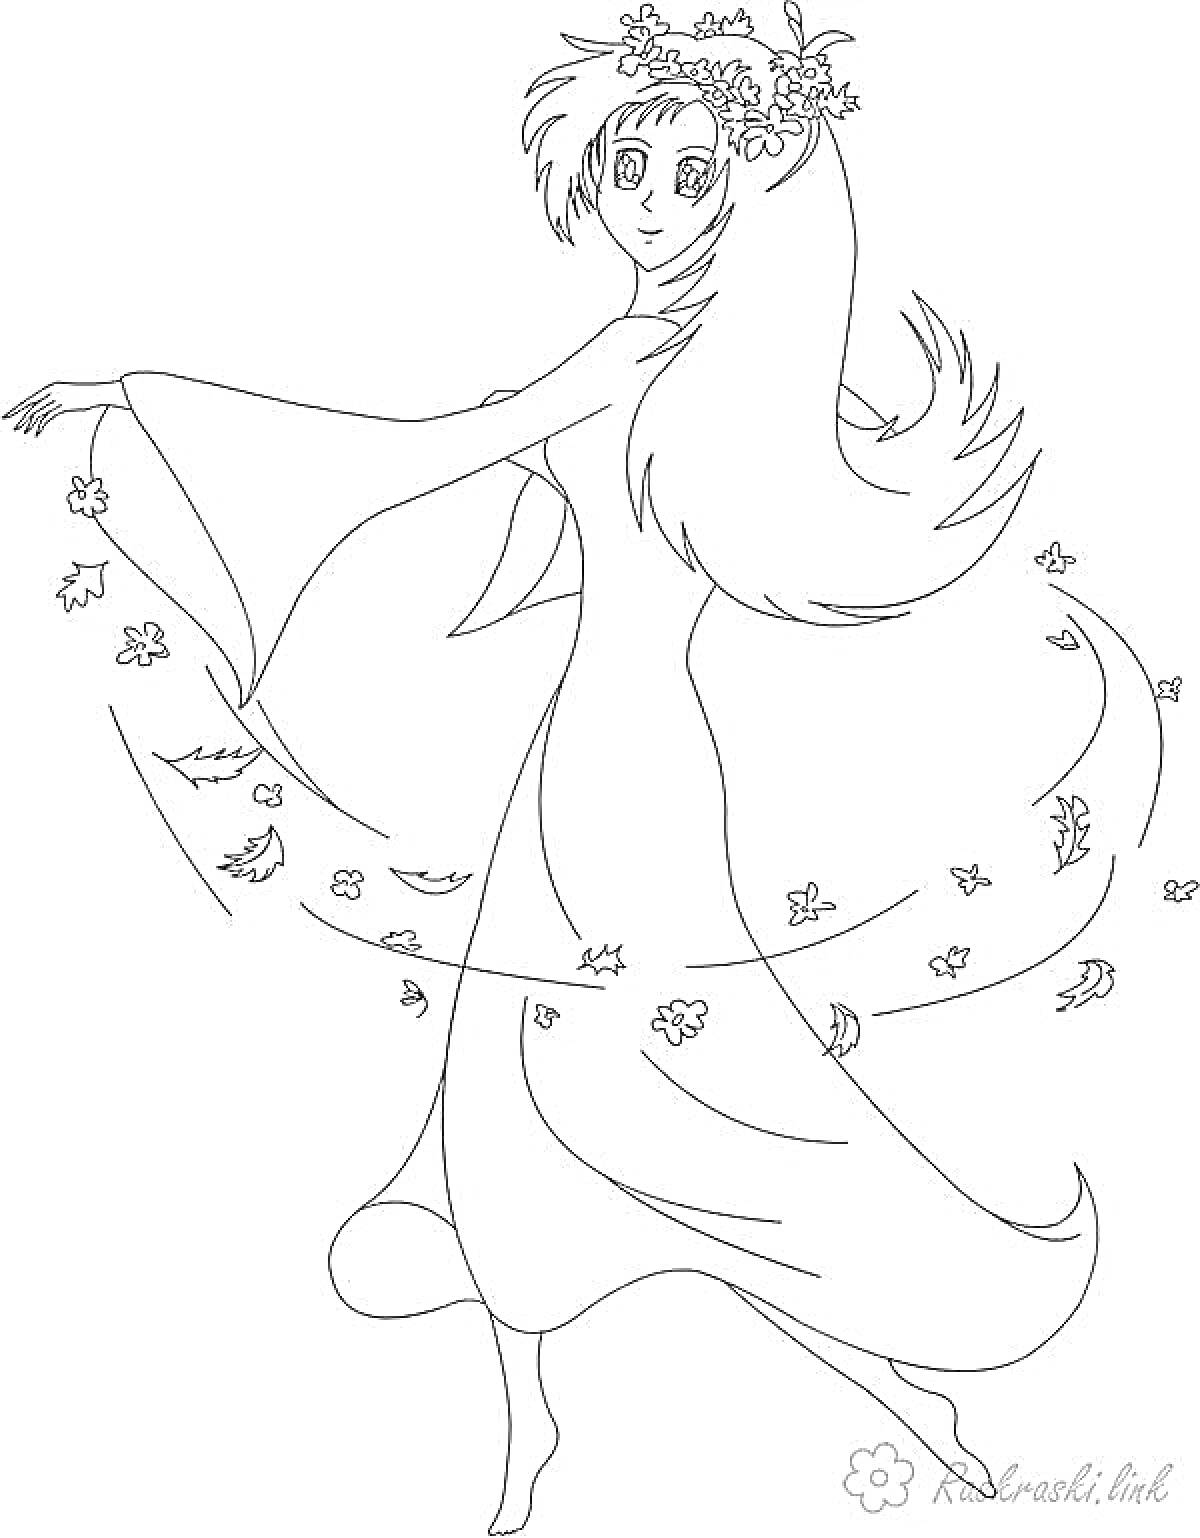 Раскраска Девушка в длинном платье с распущенными волосами и венком на голове, танцующая среди осенних листьев.